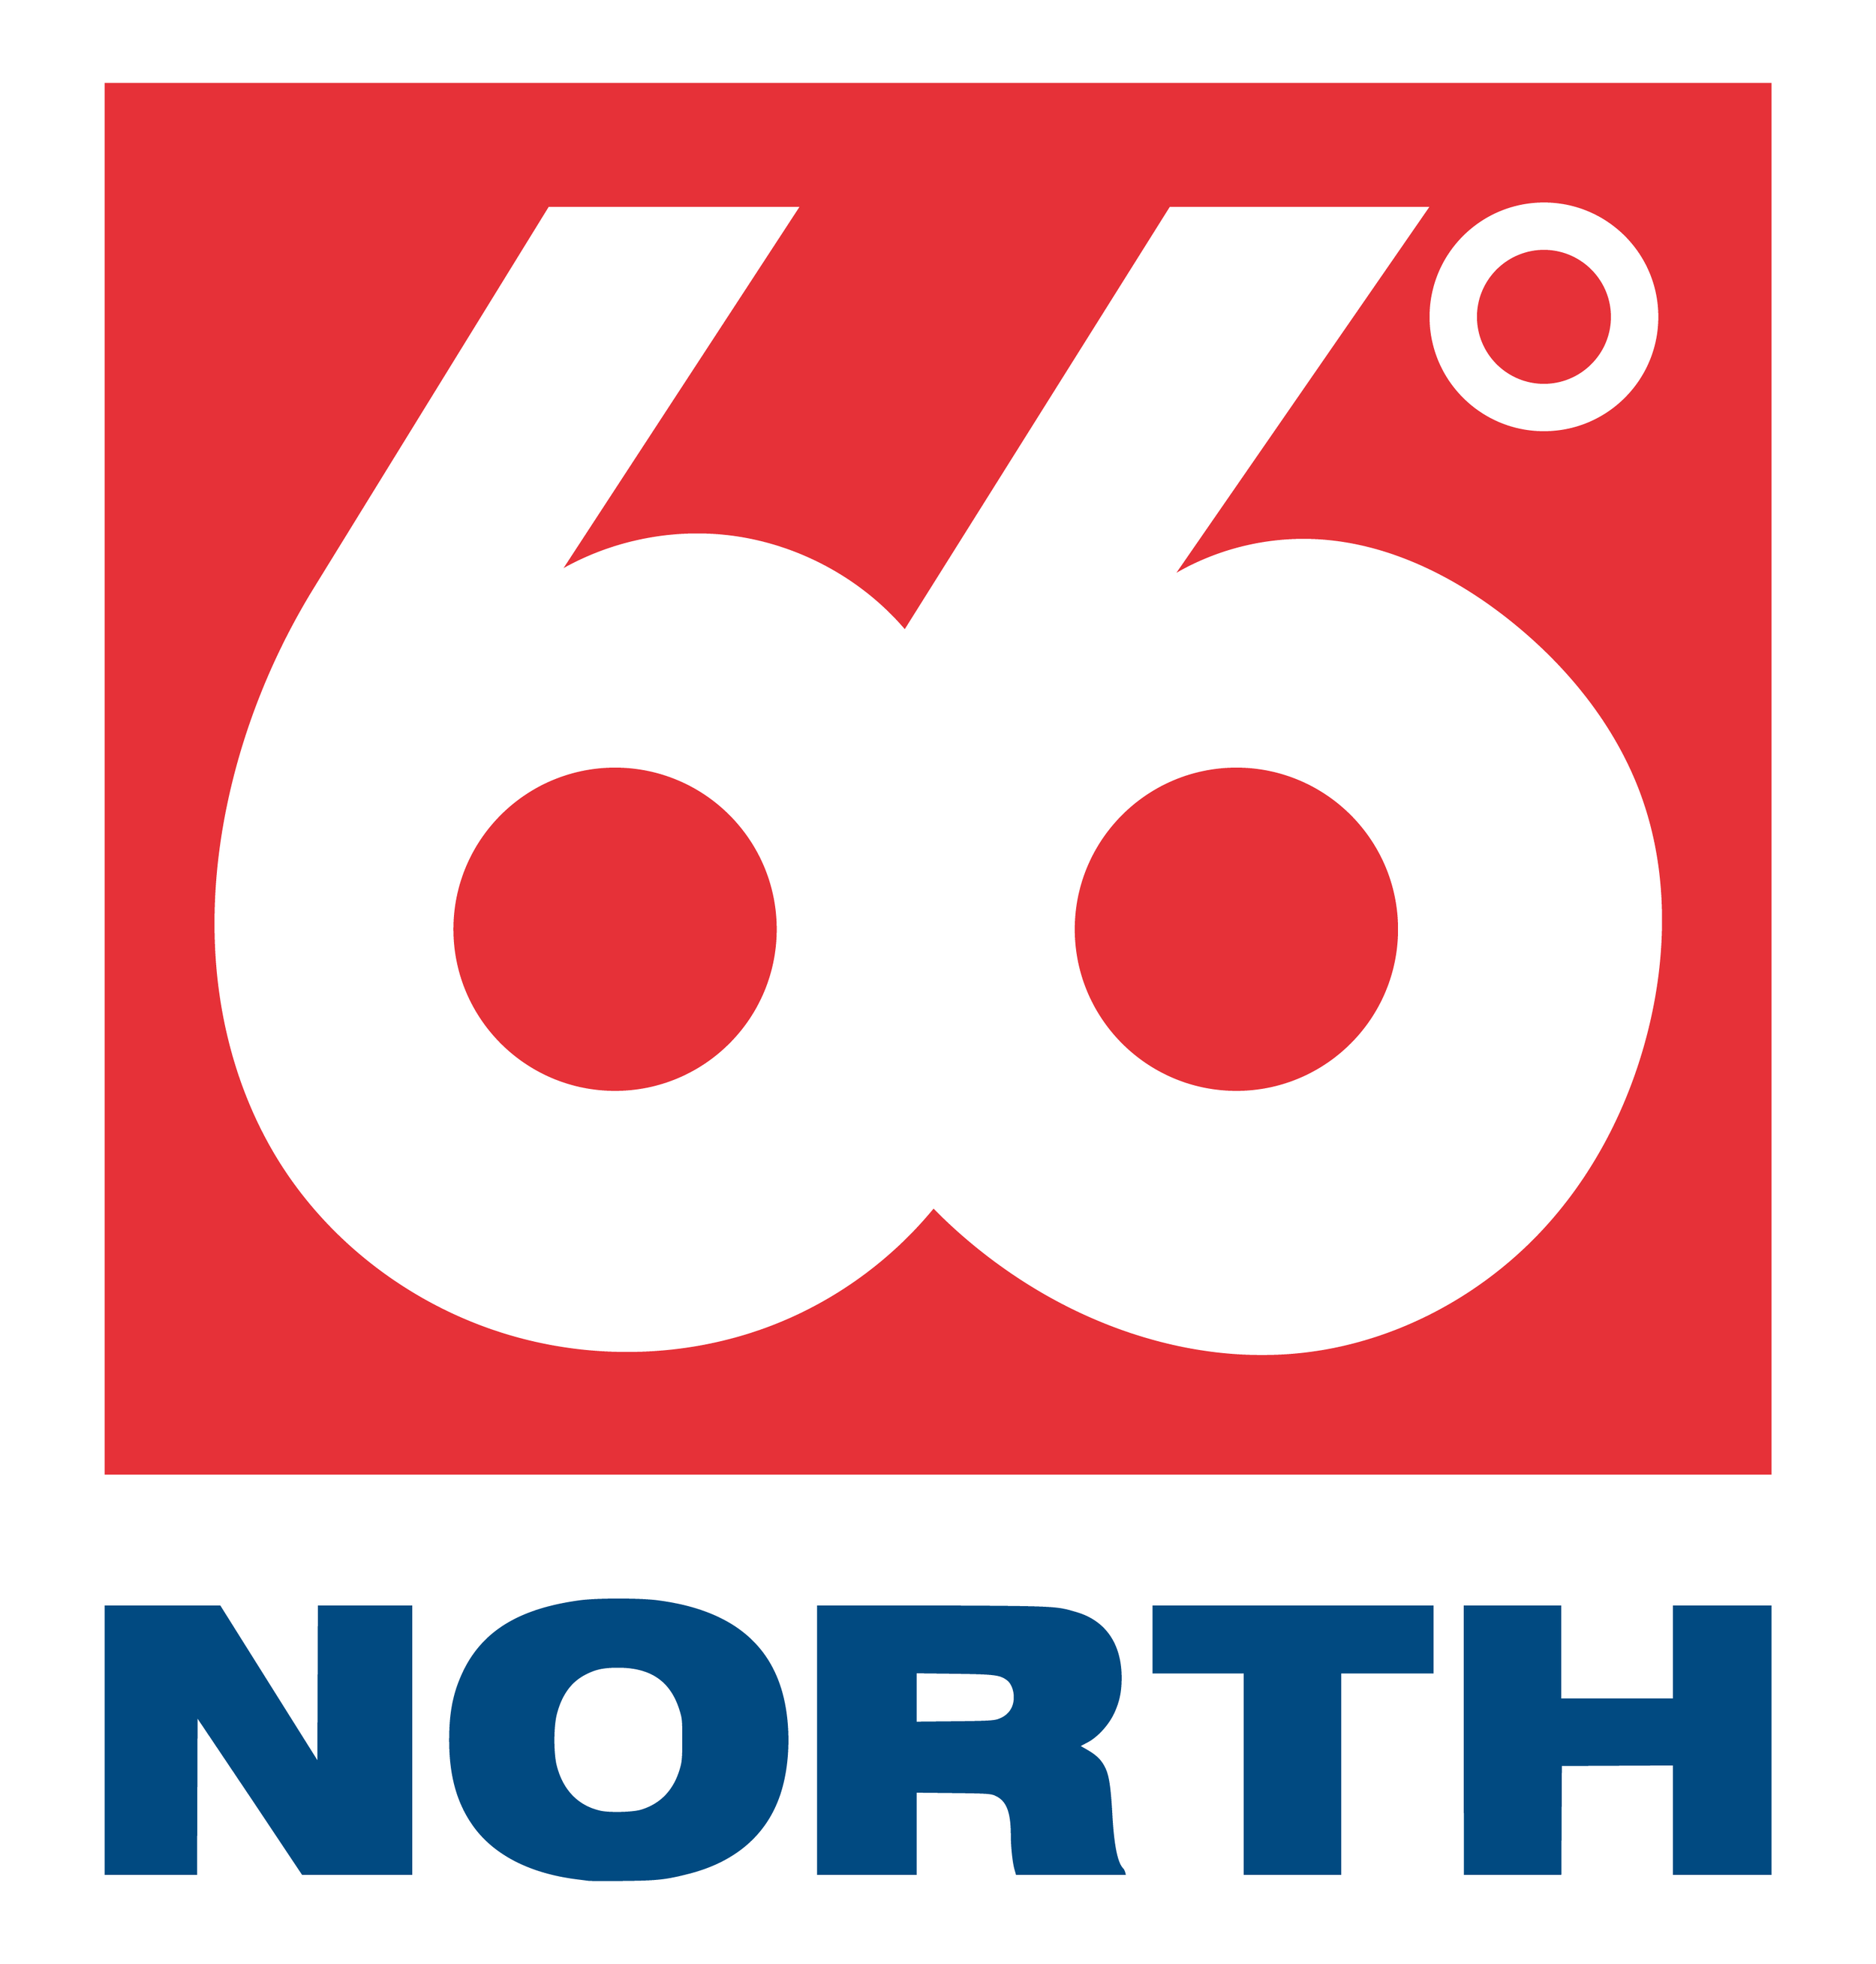 66°North_logo.png